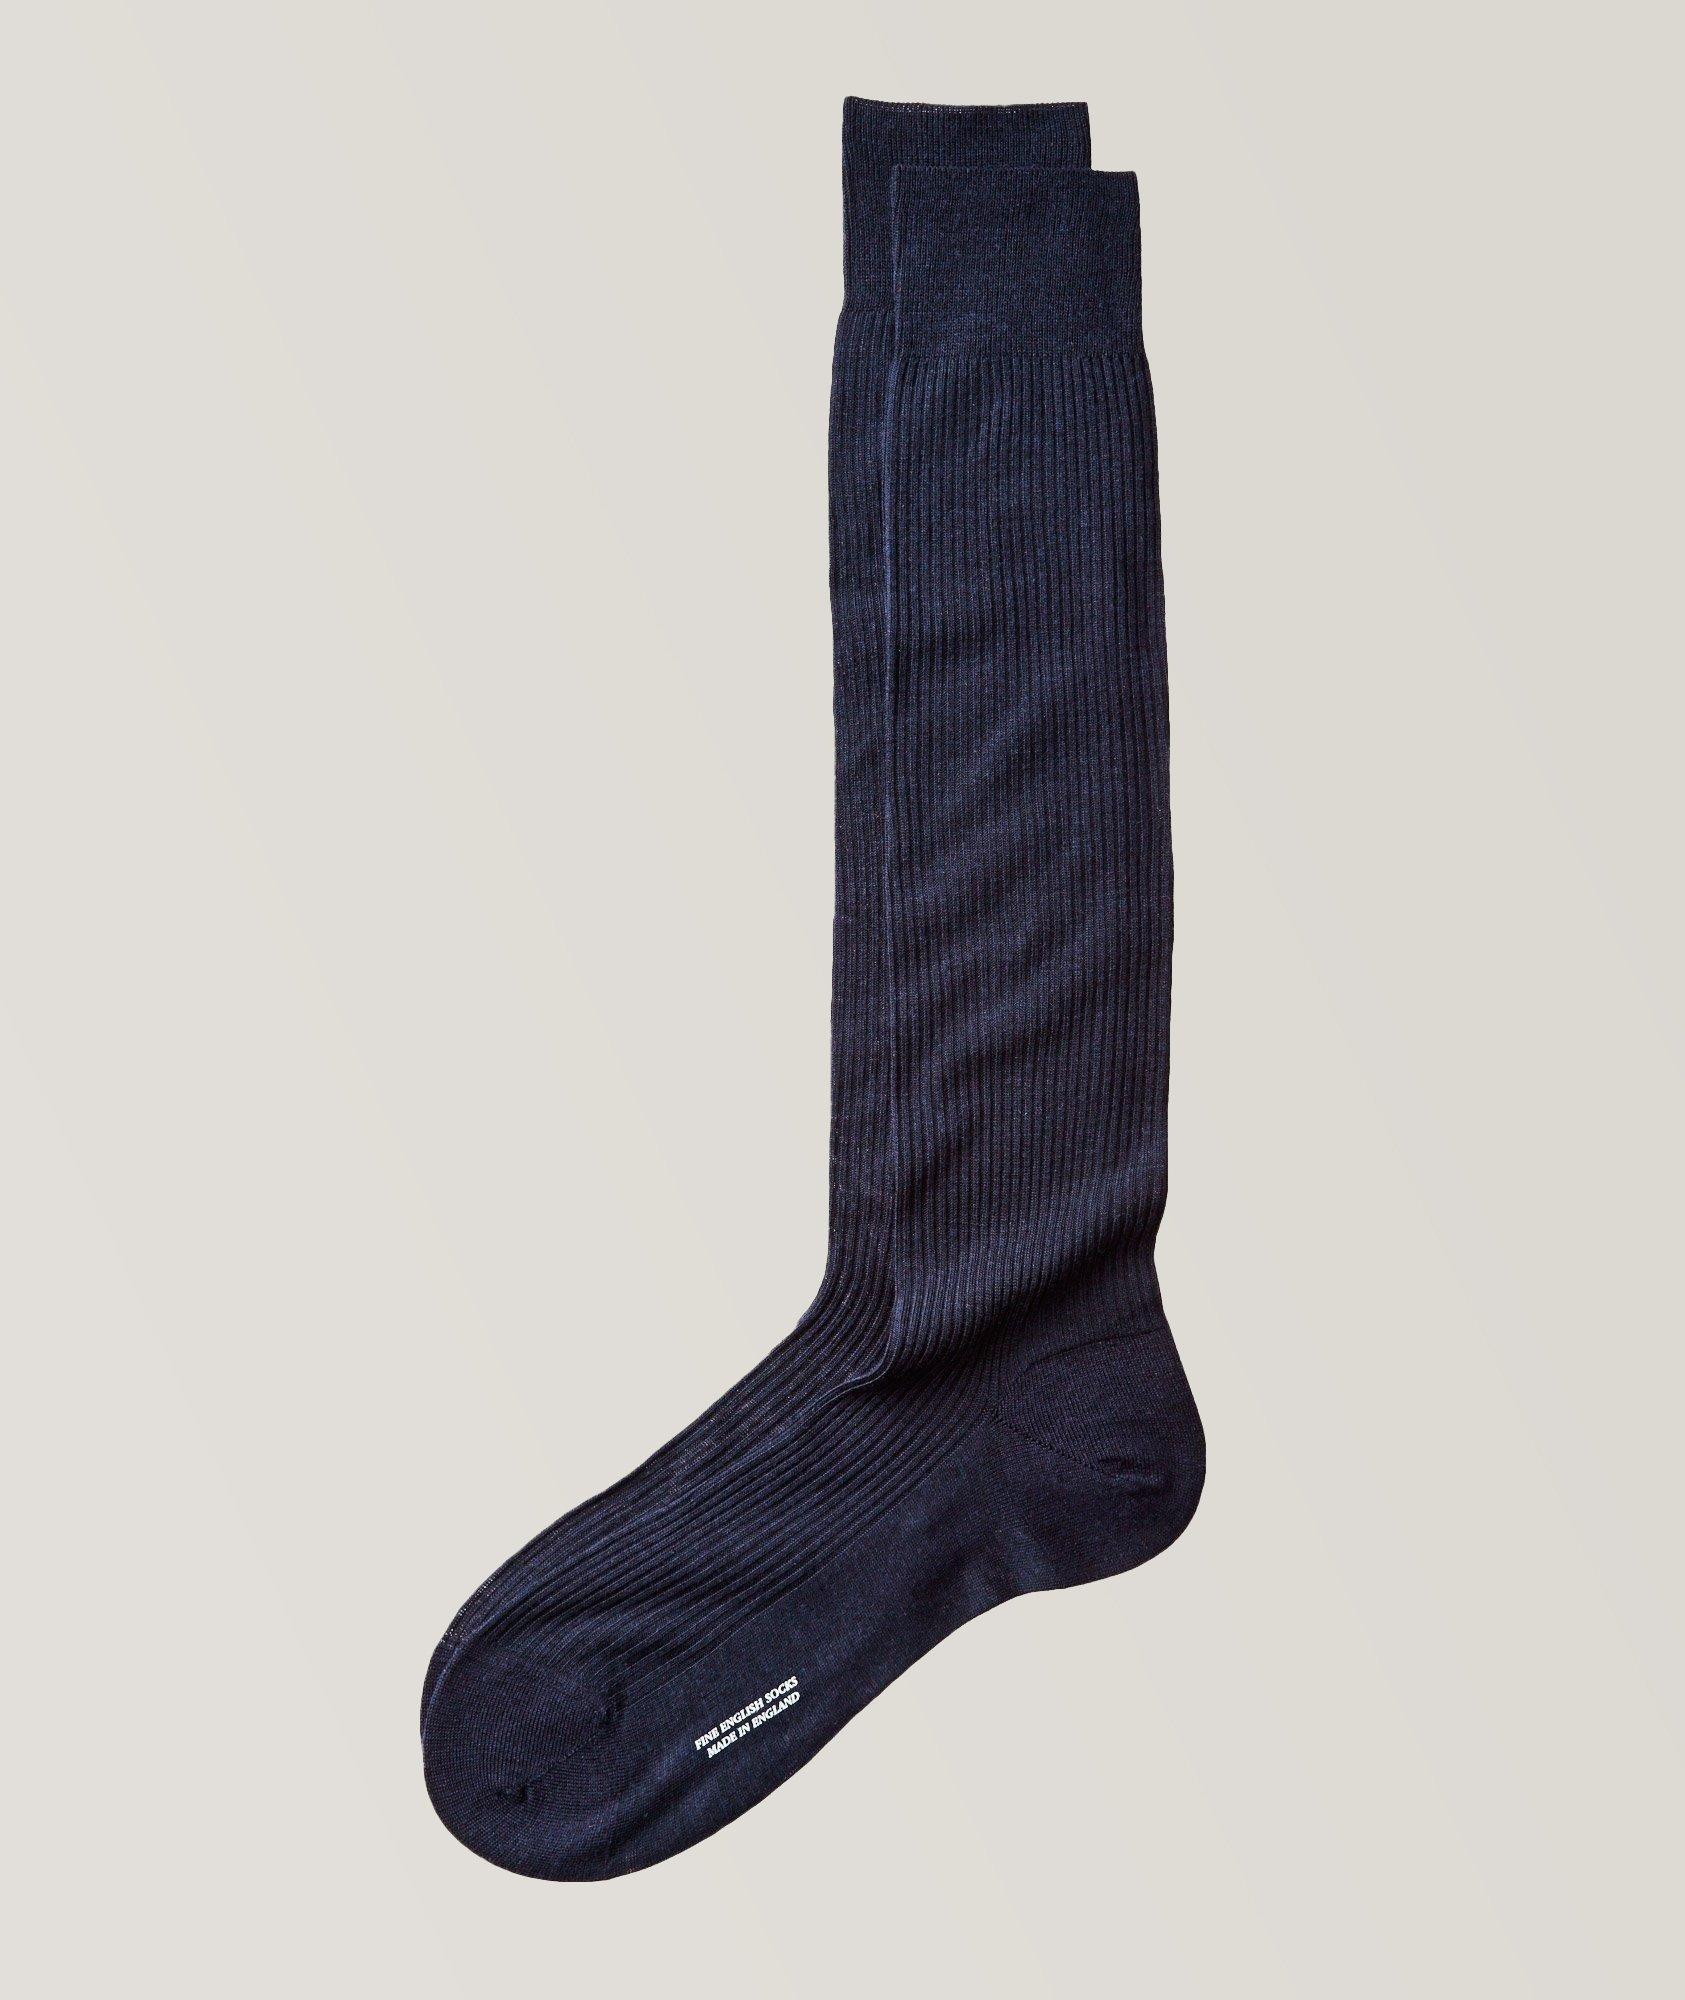 Chaussettes habillées en tricot côtelé image 0